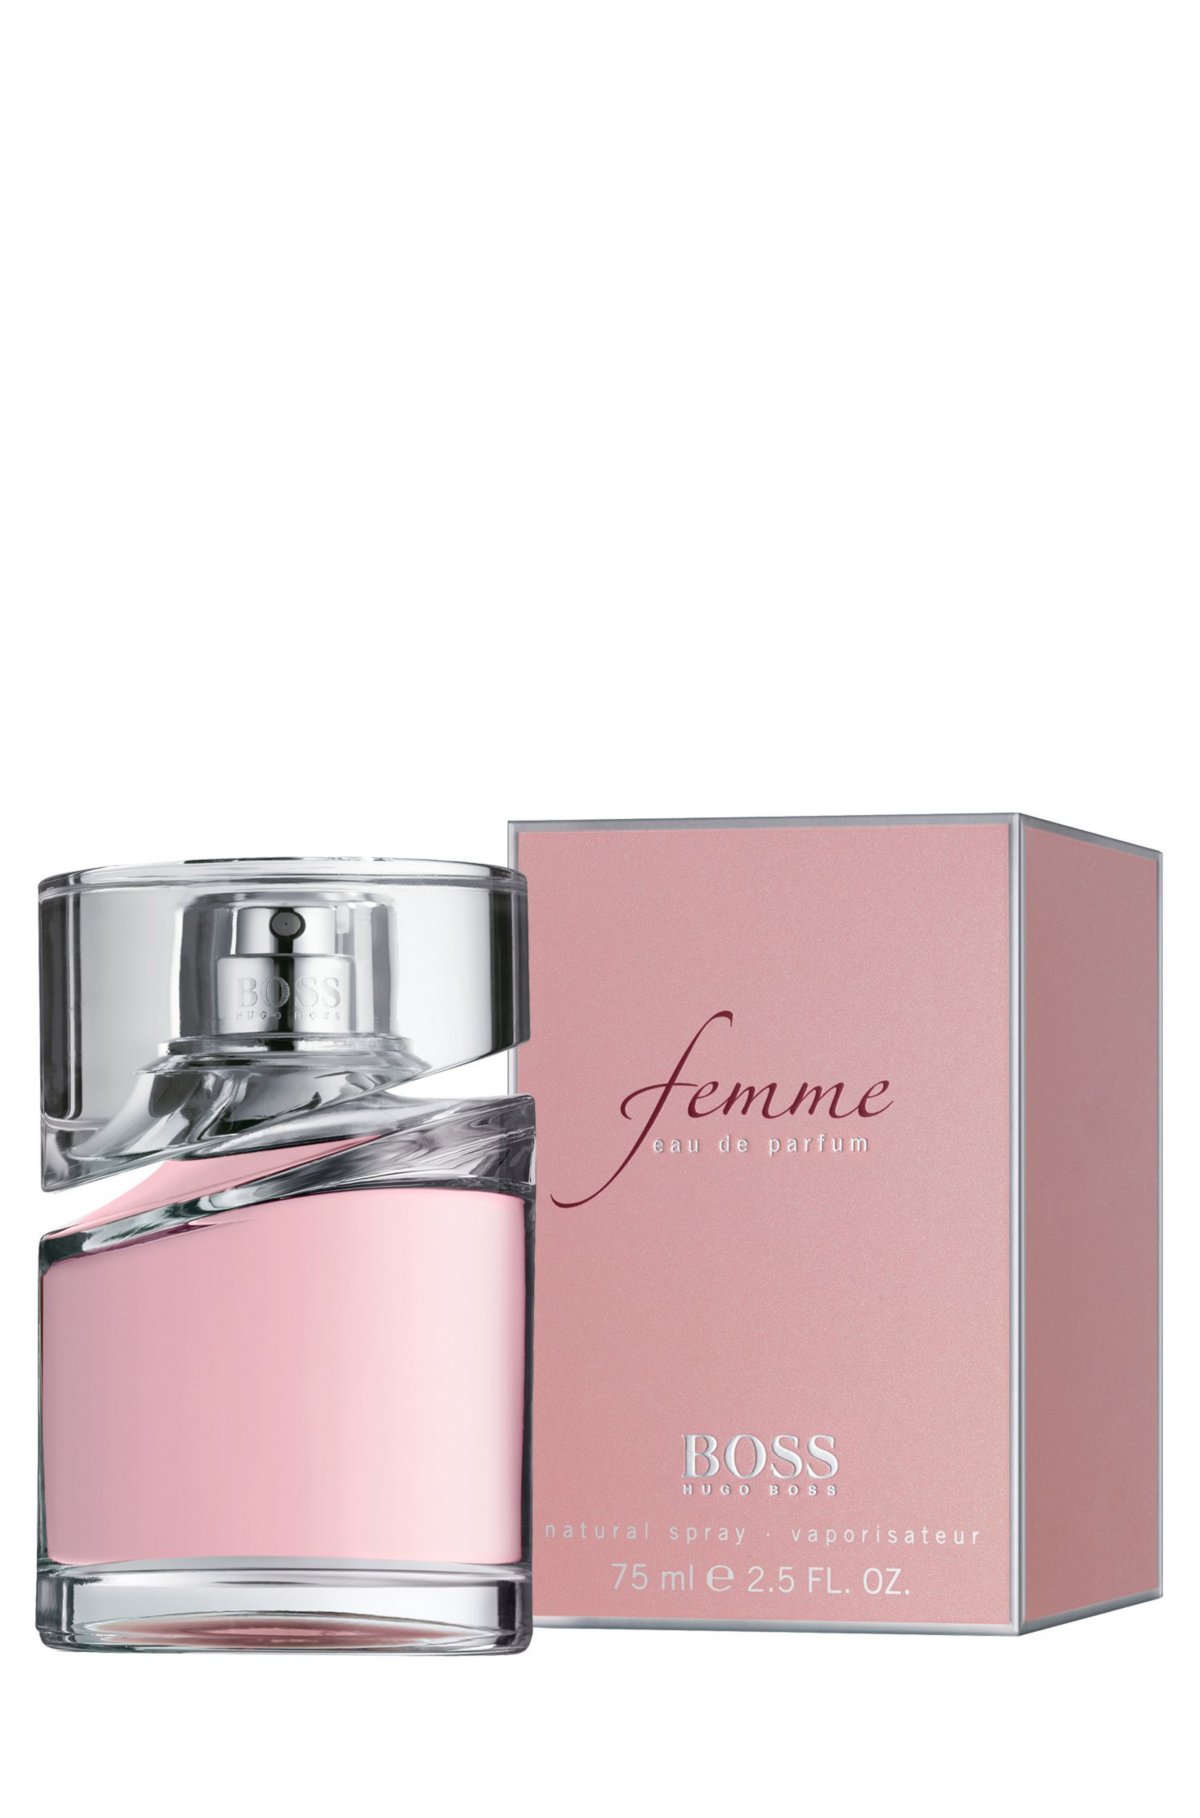 BOSS Femme by BOSS eau de parfum 75ml